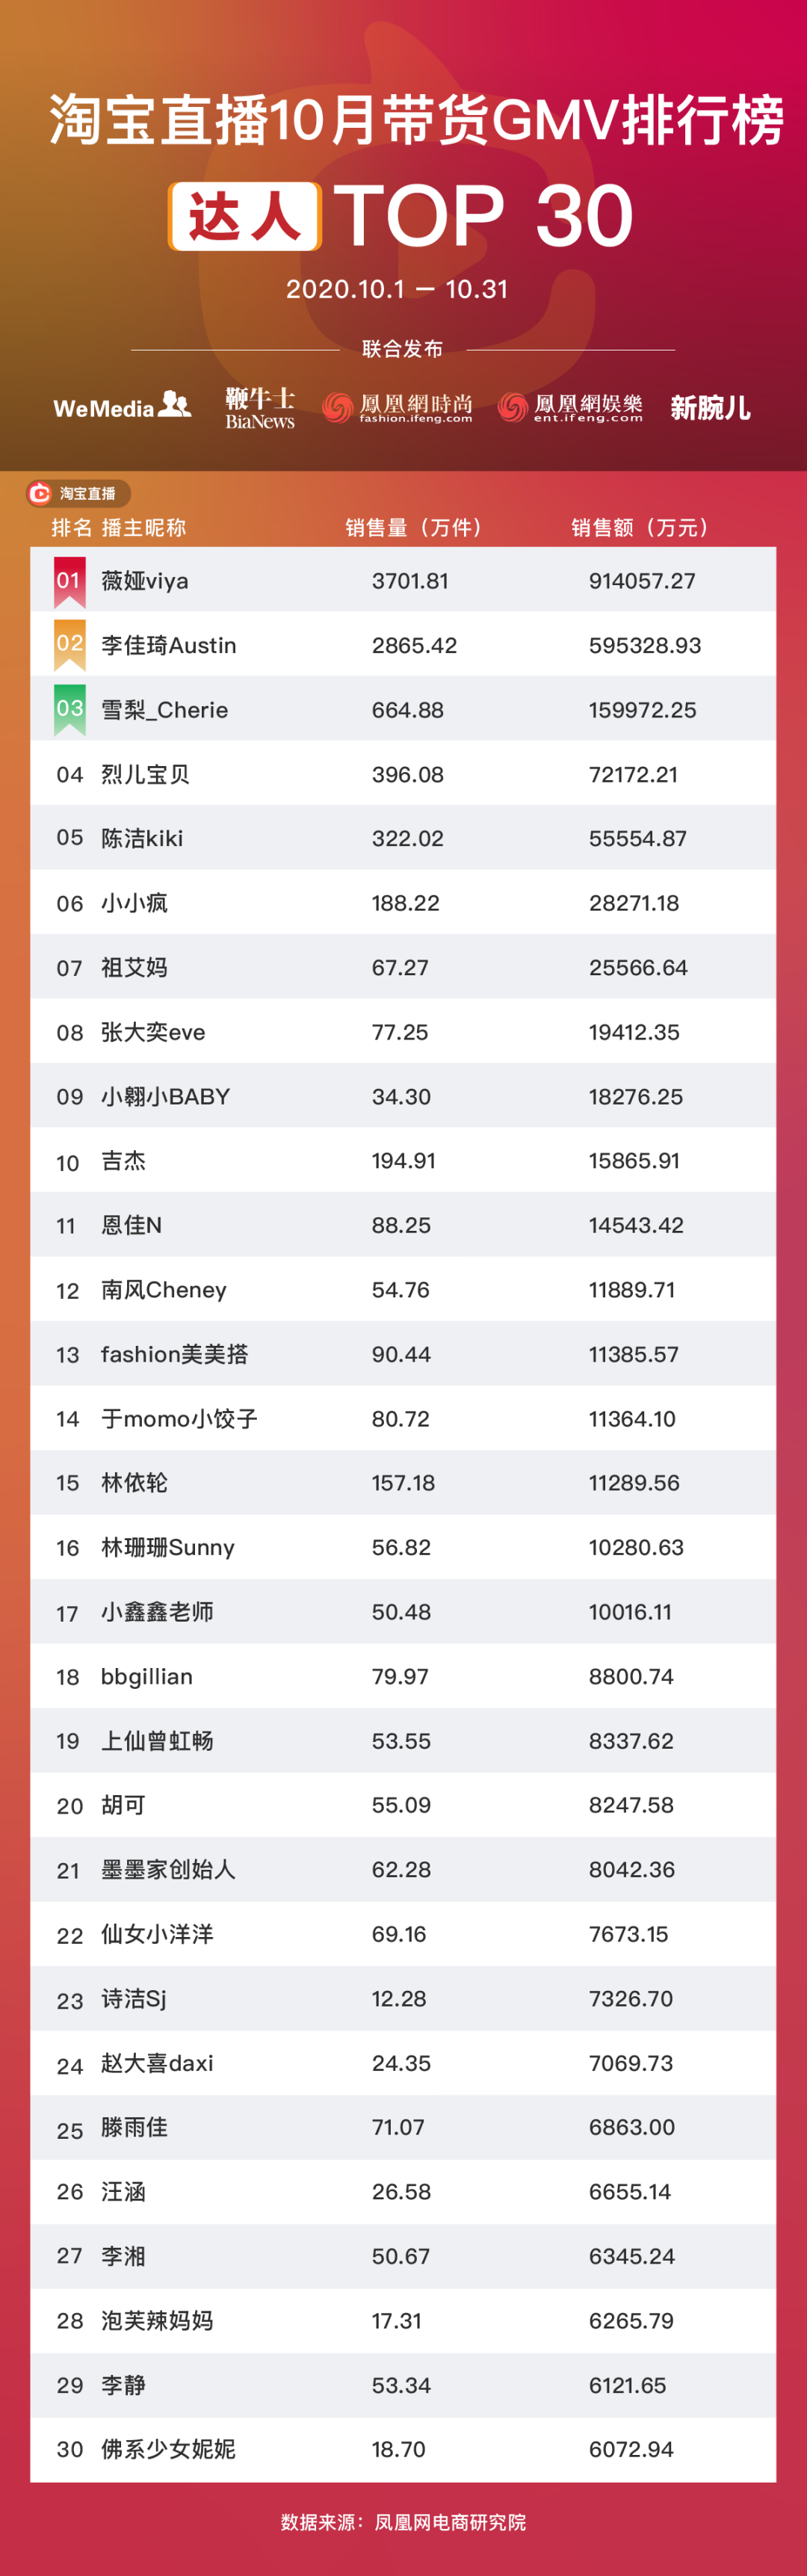 淘宝抖音快手主播GMV月榜名单:薇娅李佳琦破50亿、辛巴持续霸榜